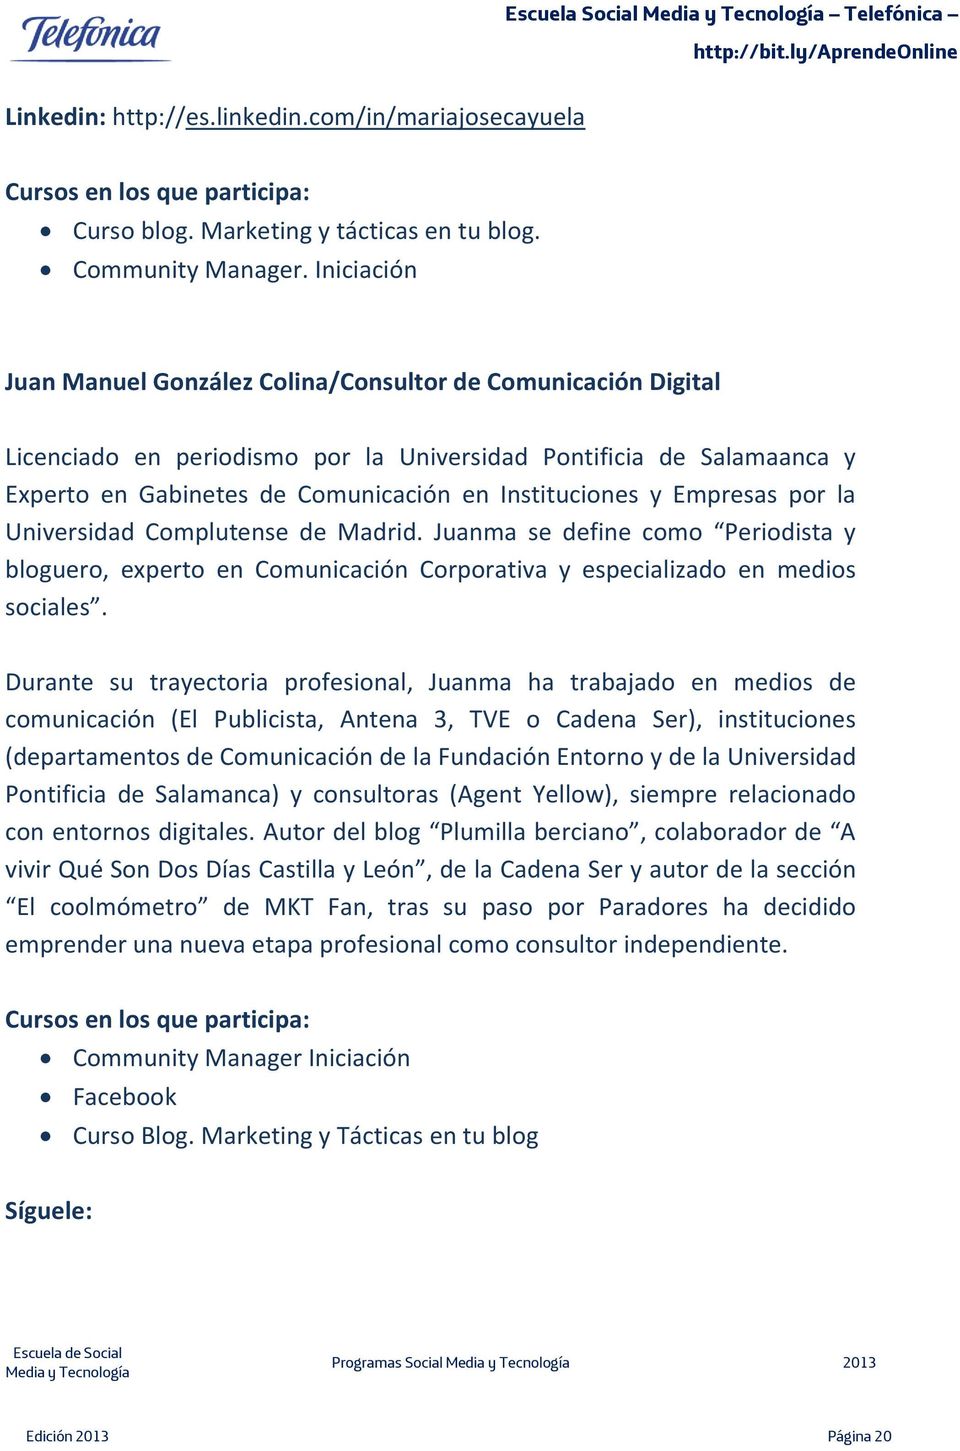 Empresas por la Universidad Complutense de Madrid. Juanma se define como Periodista y bloguero, experto en Comunicación Corporativa y especializado en medios sociales.